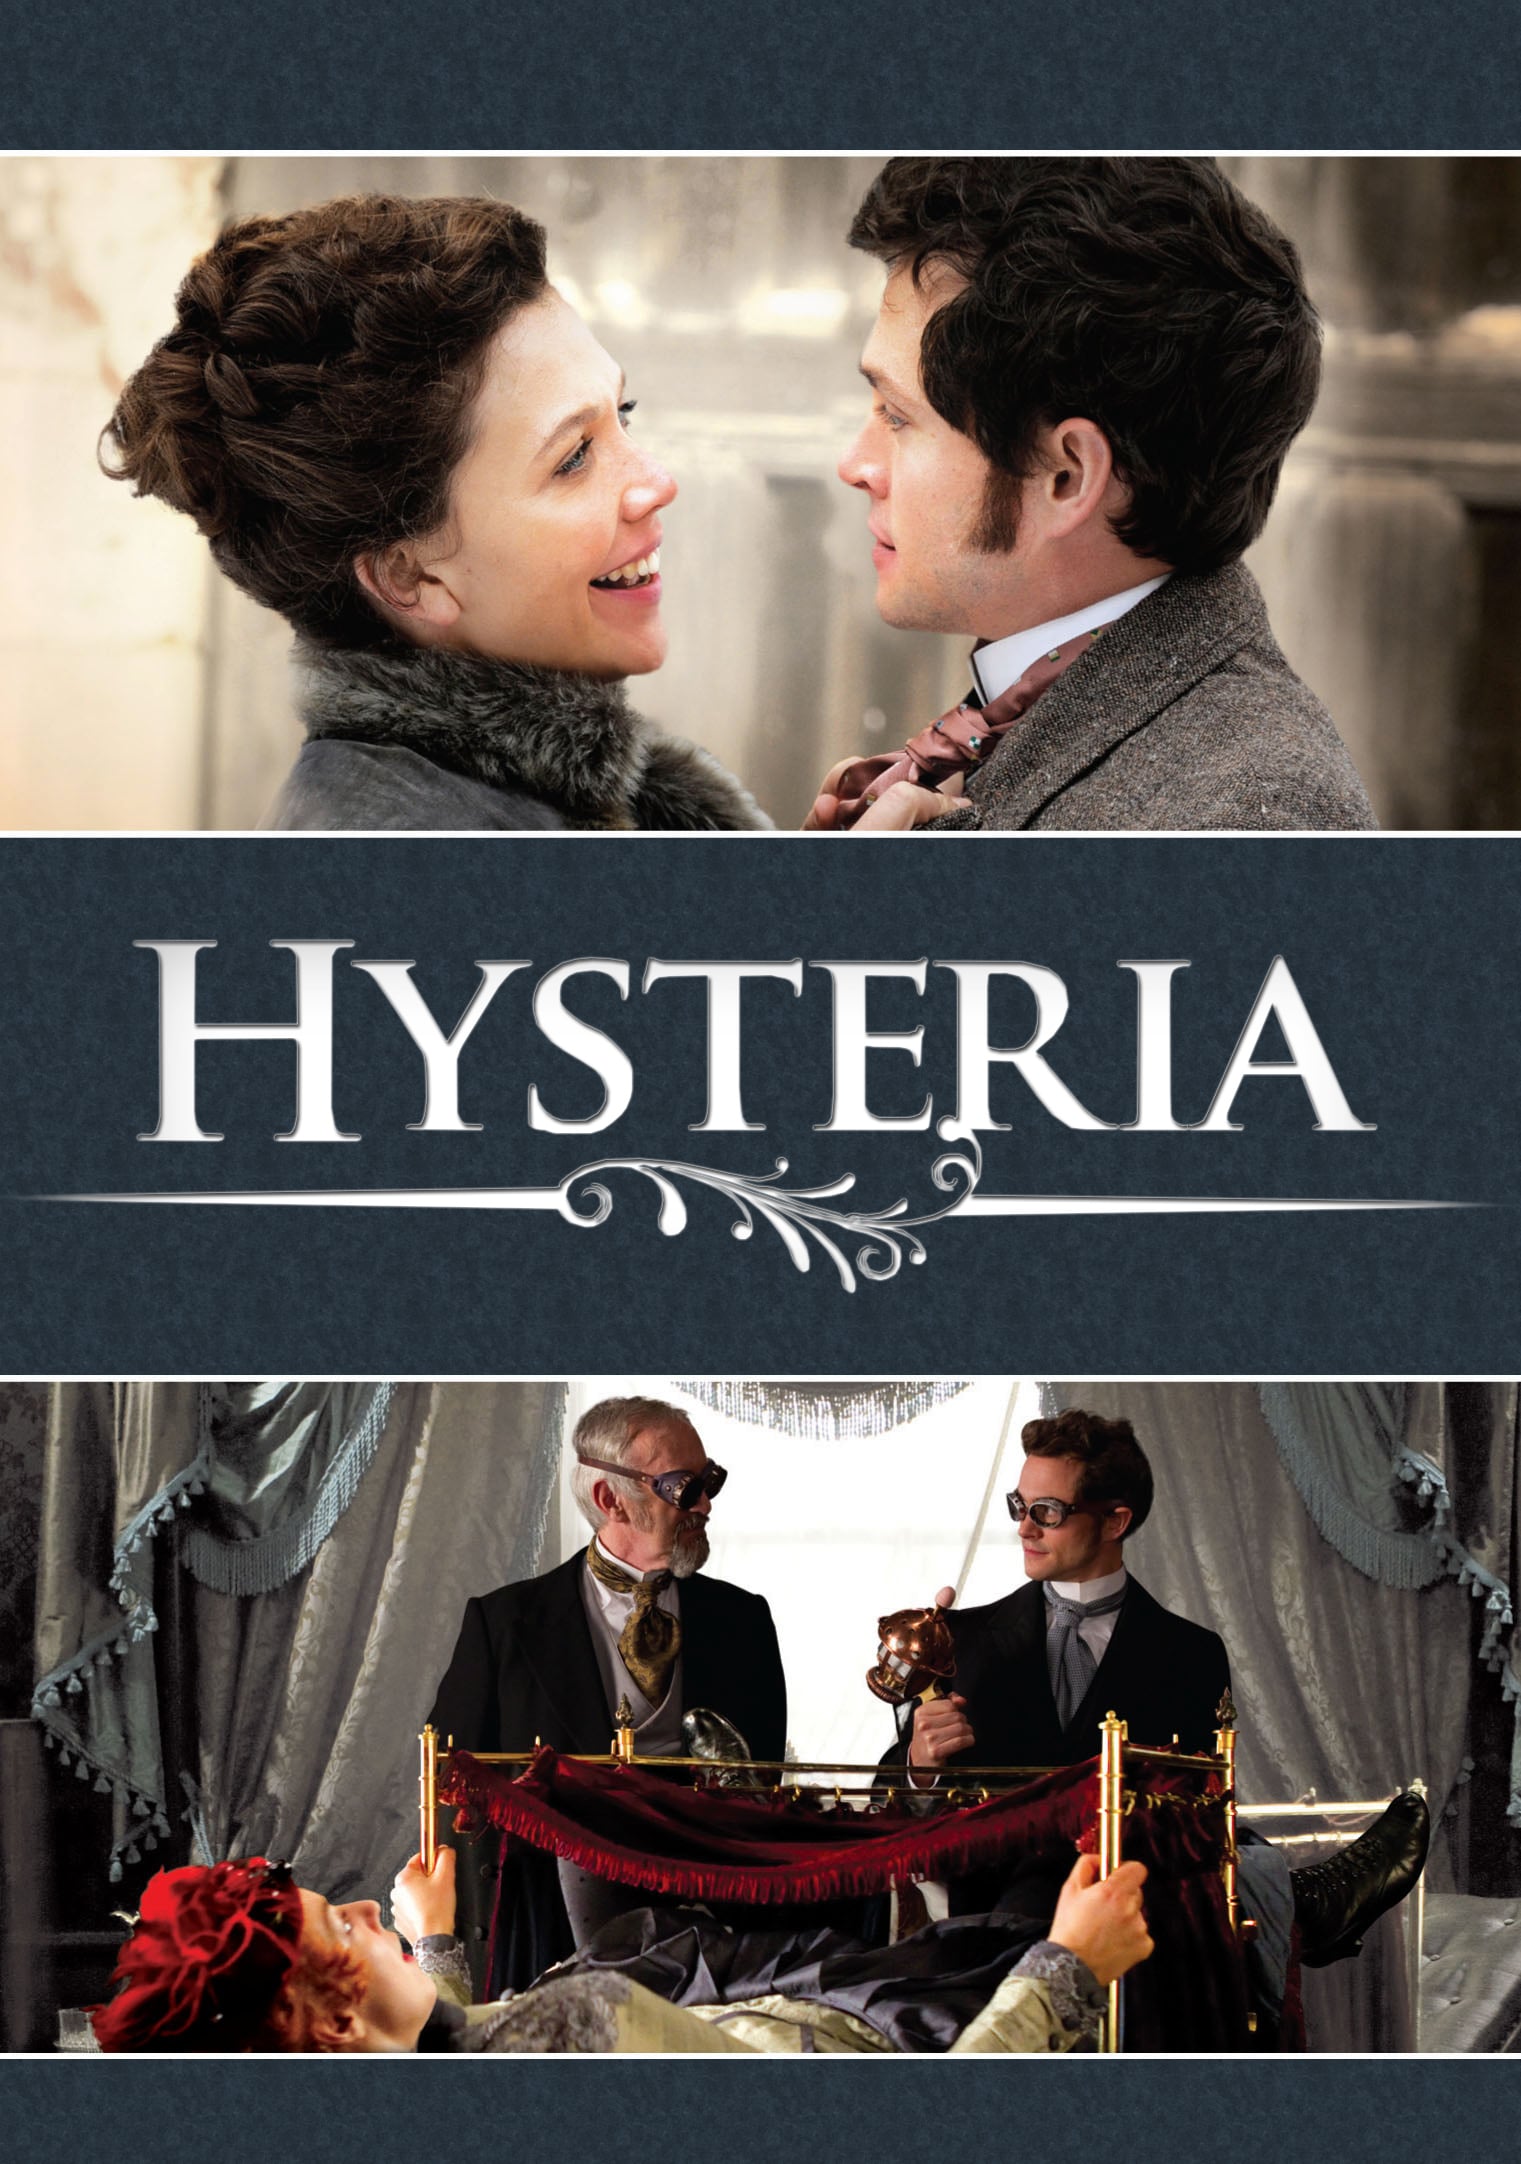 Hysteria, 2011 